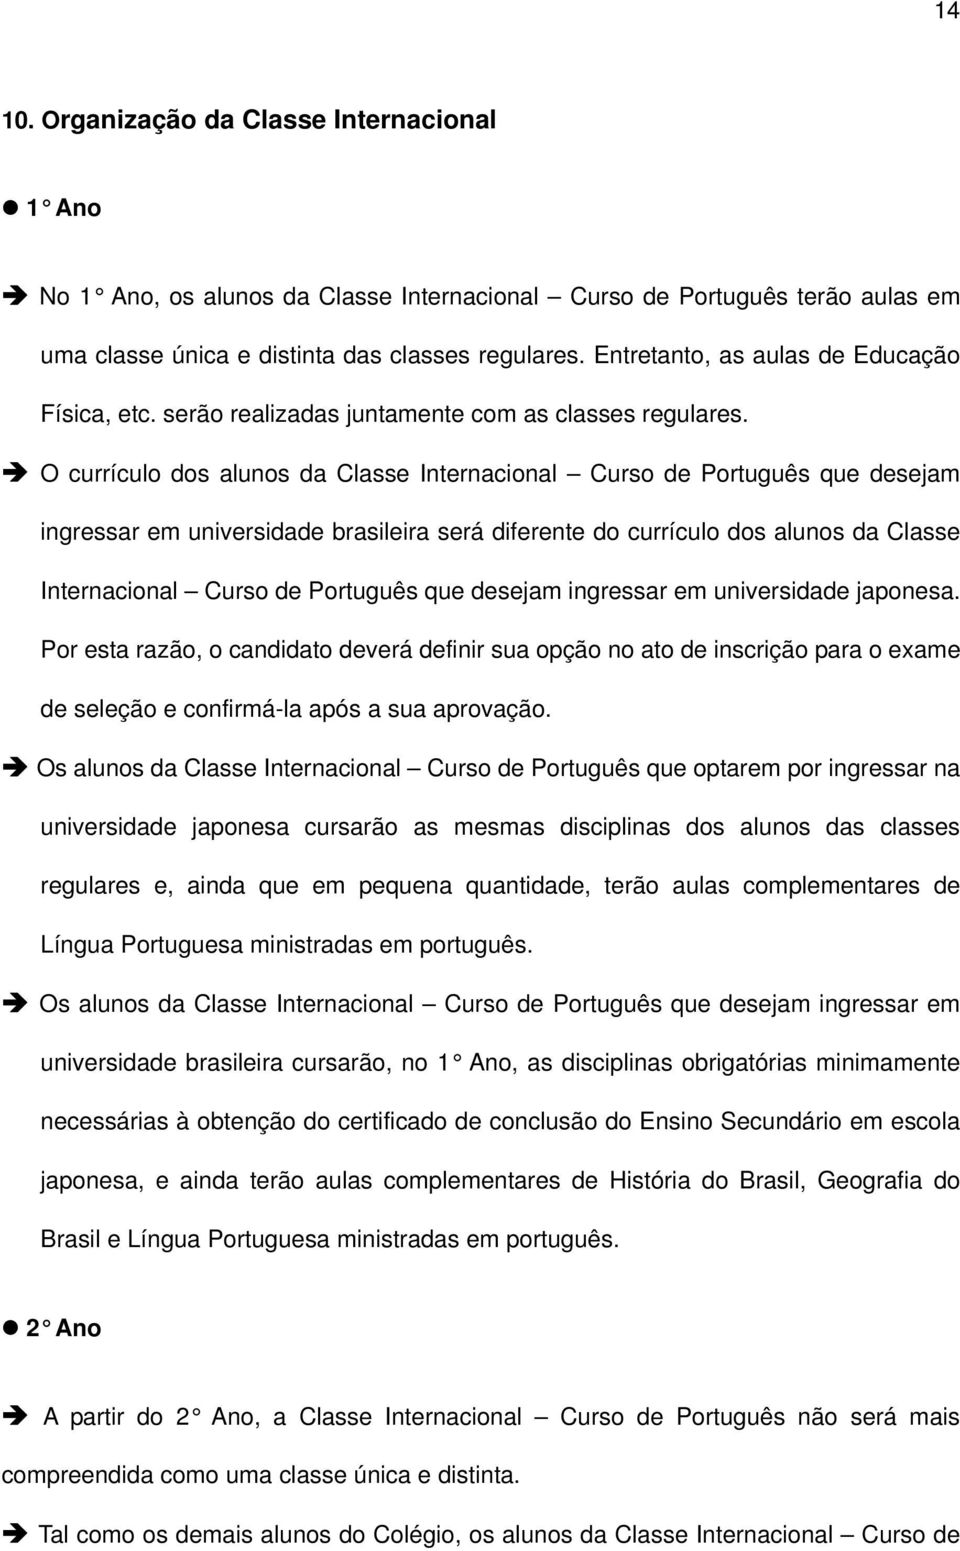 O currículo dos alunos da Classe Internacional Curso de Português que desejam ingressar em universidade brasileira será diferente do currículo dos alunos da Classe Internacional Curso de Português